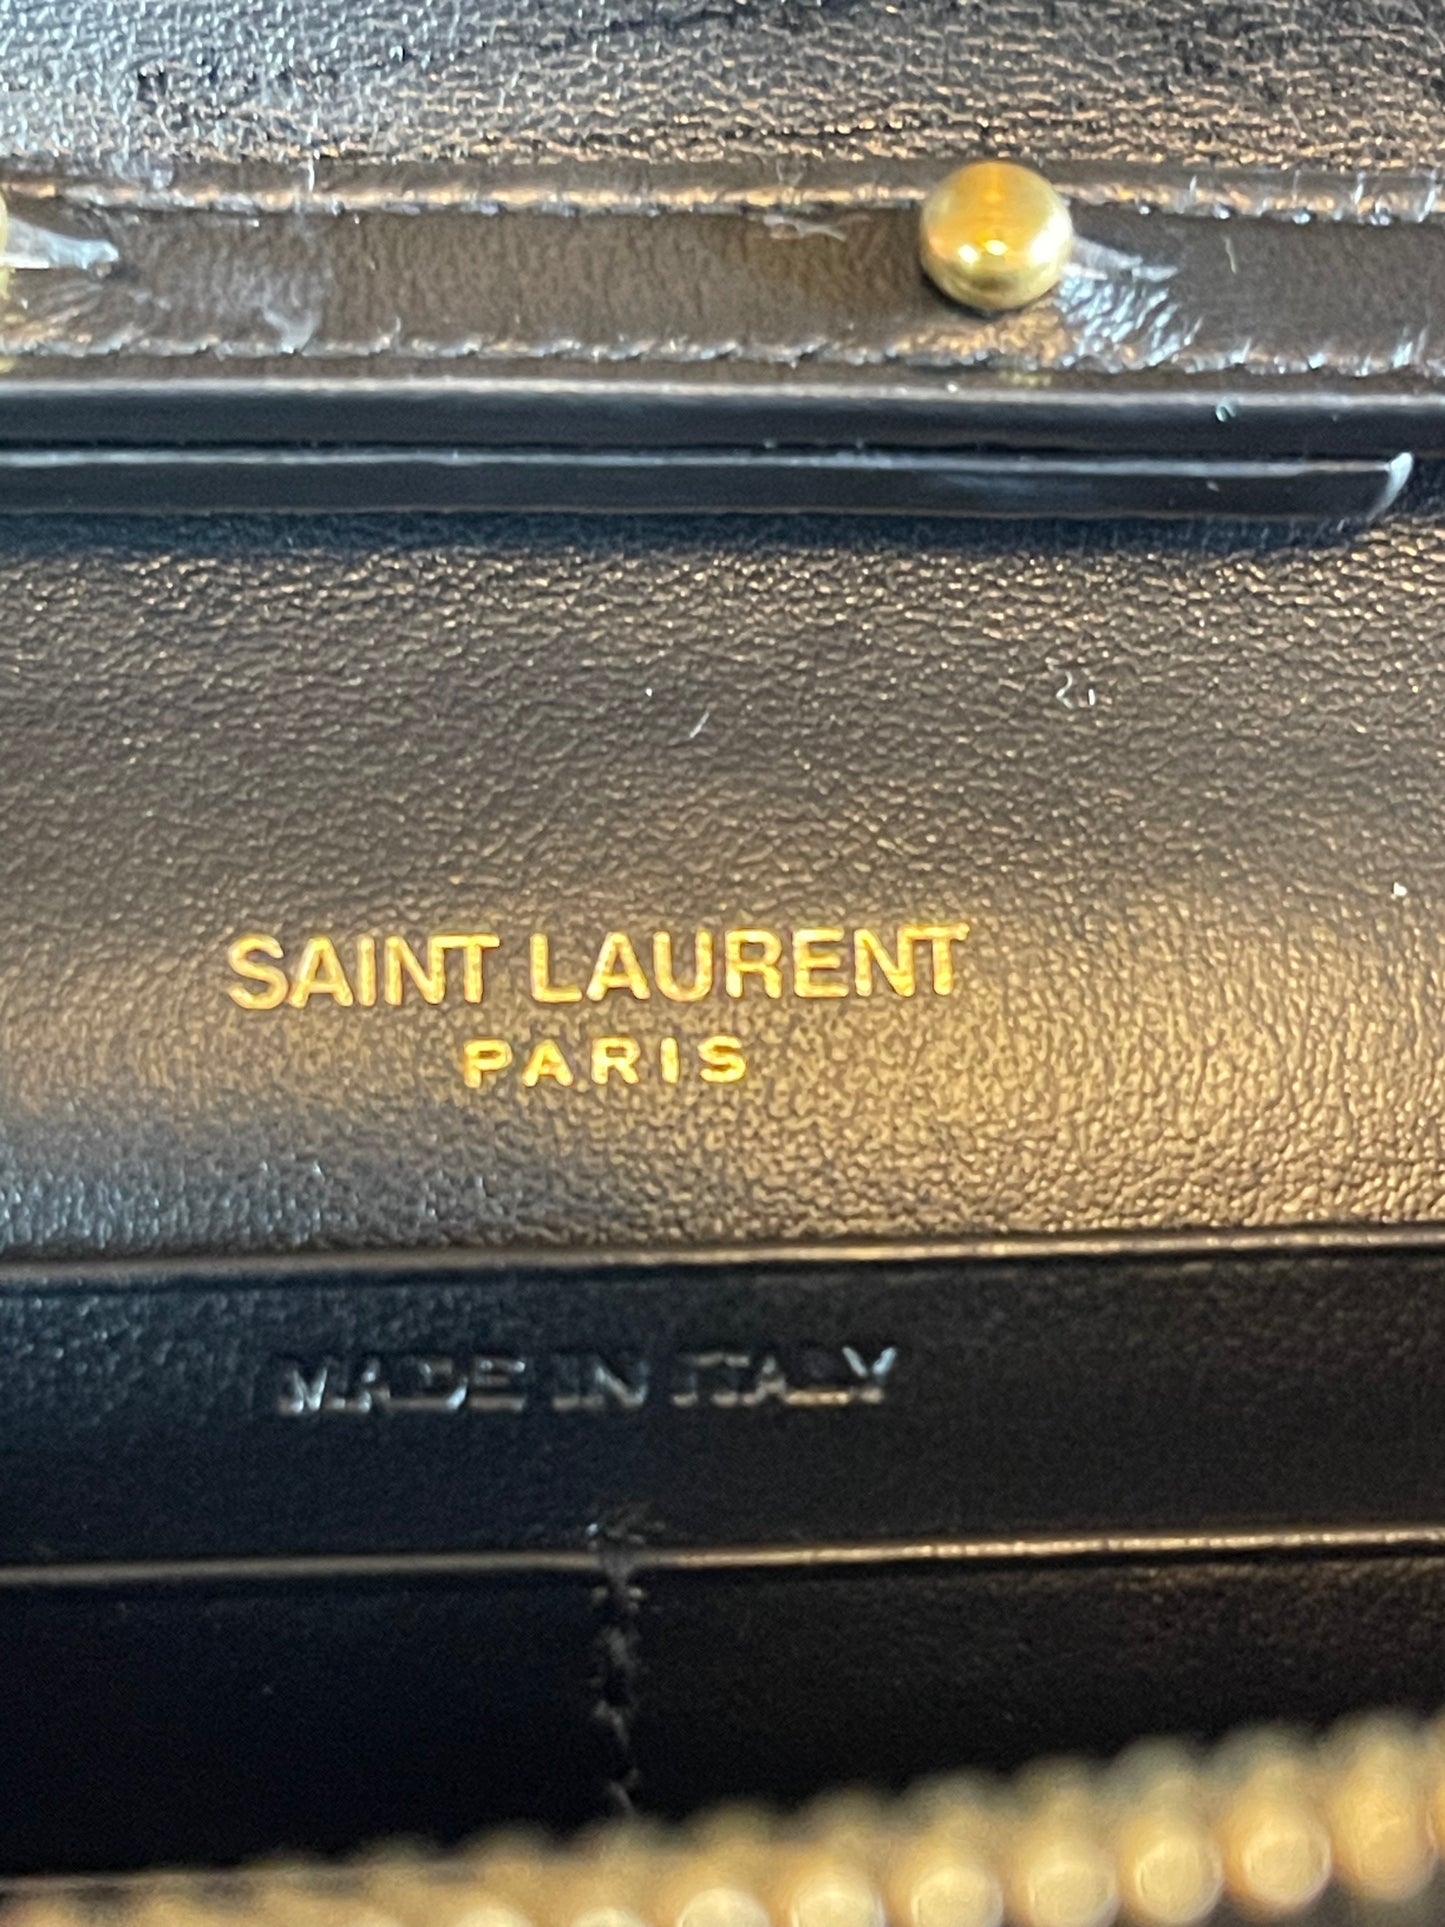 YSL Kate Monogram Leopard Print Shoulder Bag (Wallet on Chain)